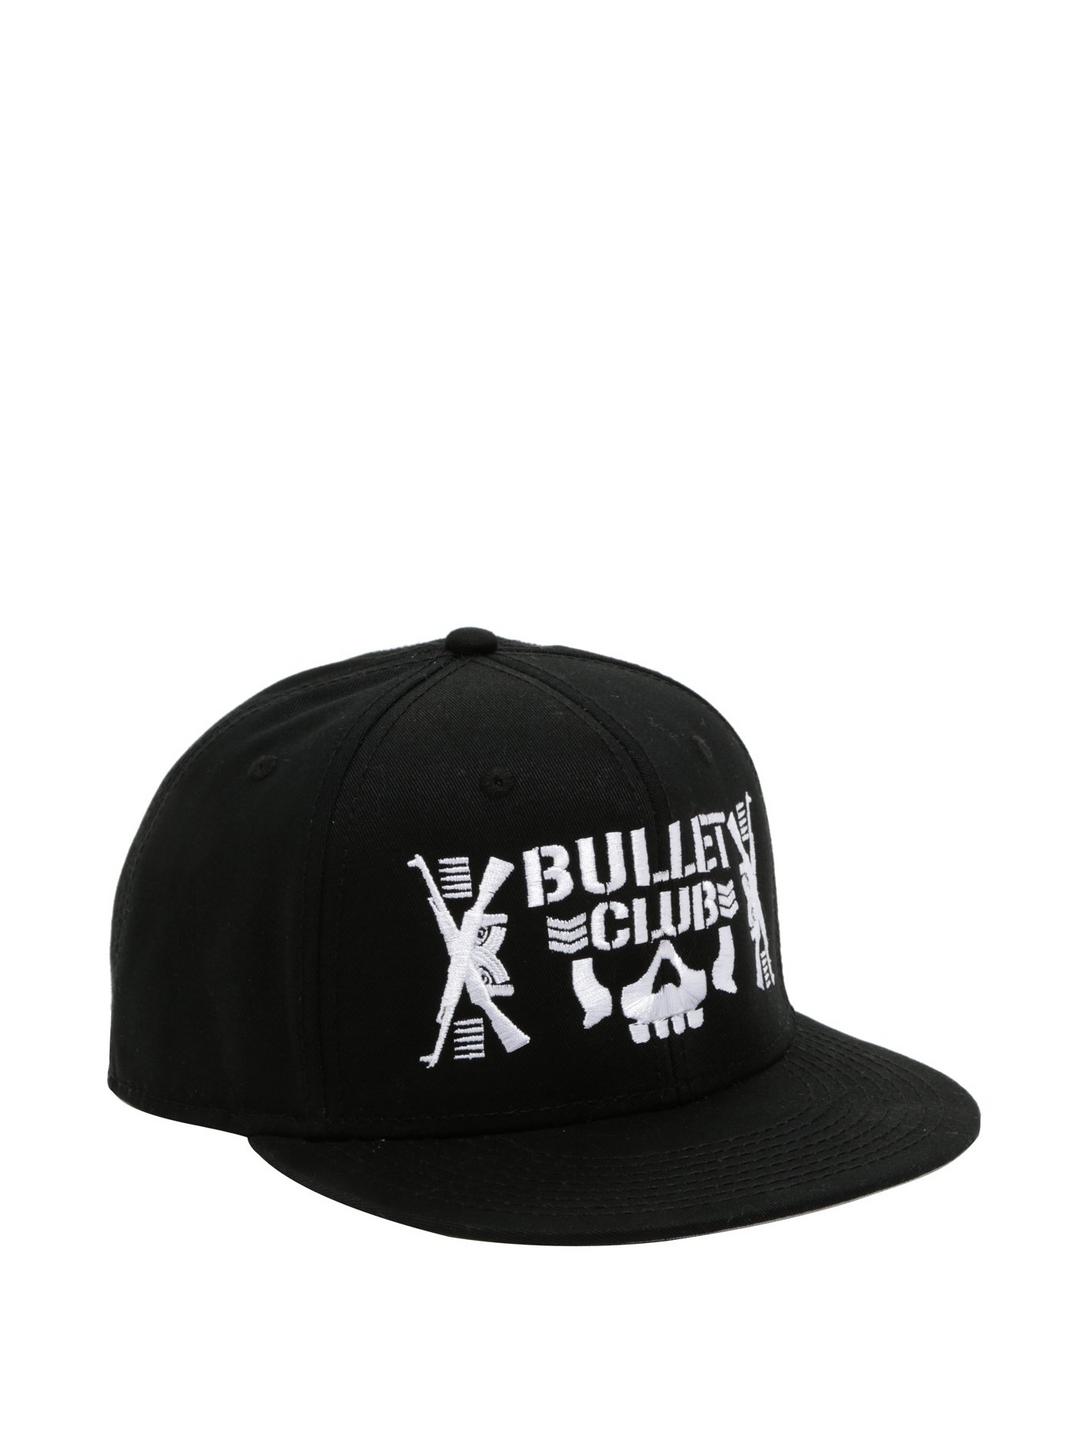 New Japan Pro-Wrestling Bullet Club Logo Snapback Hat, , hi-res